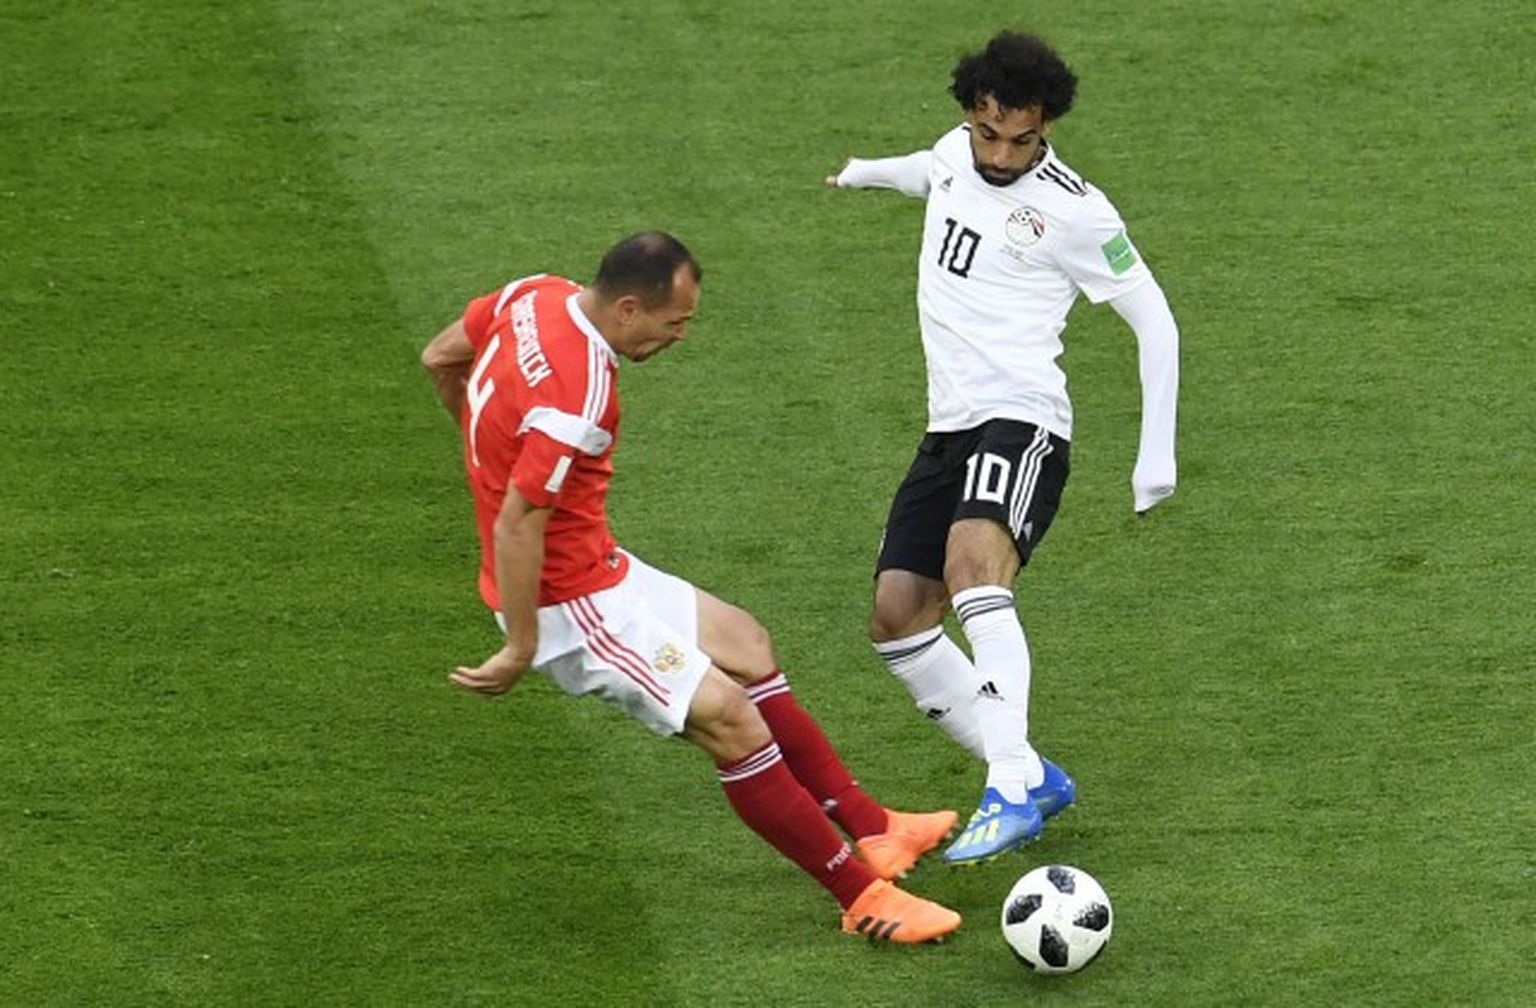 Pasaules kauss futbolā. Divcīņa starp Sergeju Ignaševiču (Krievija) un Mohamedu Salāhu (Ēģipte)